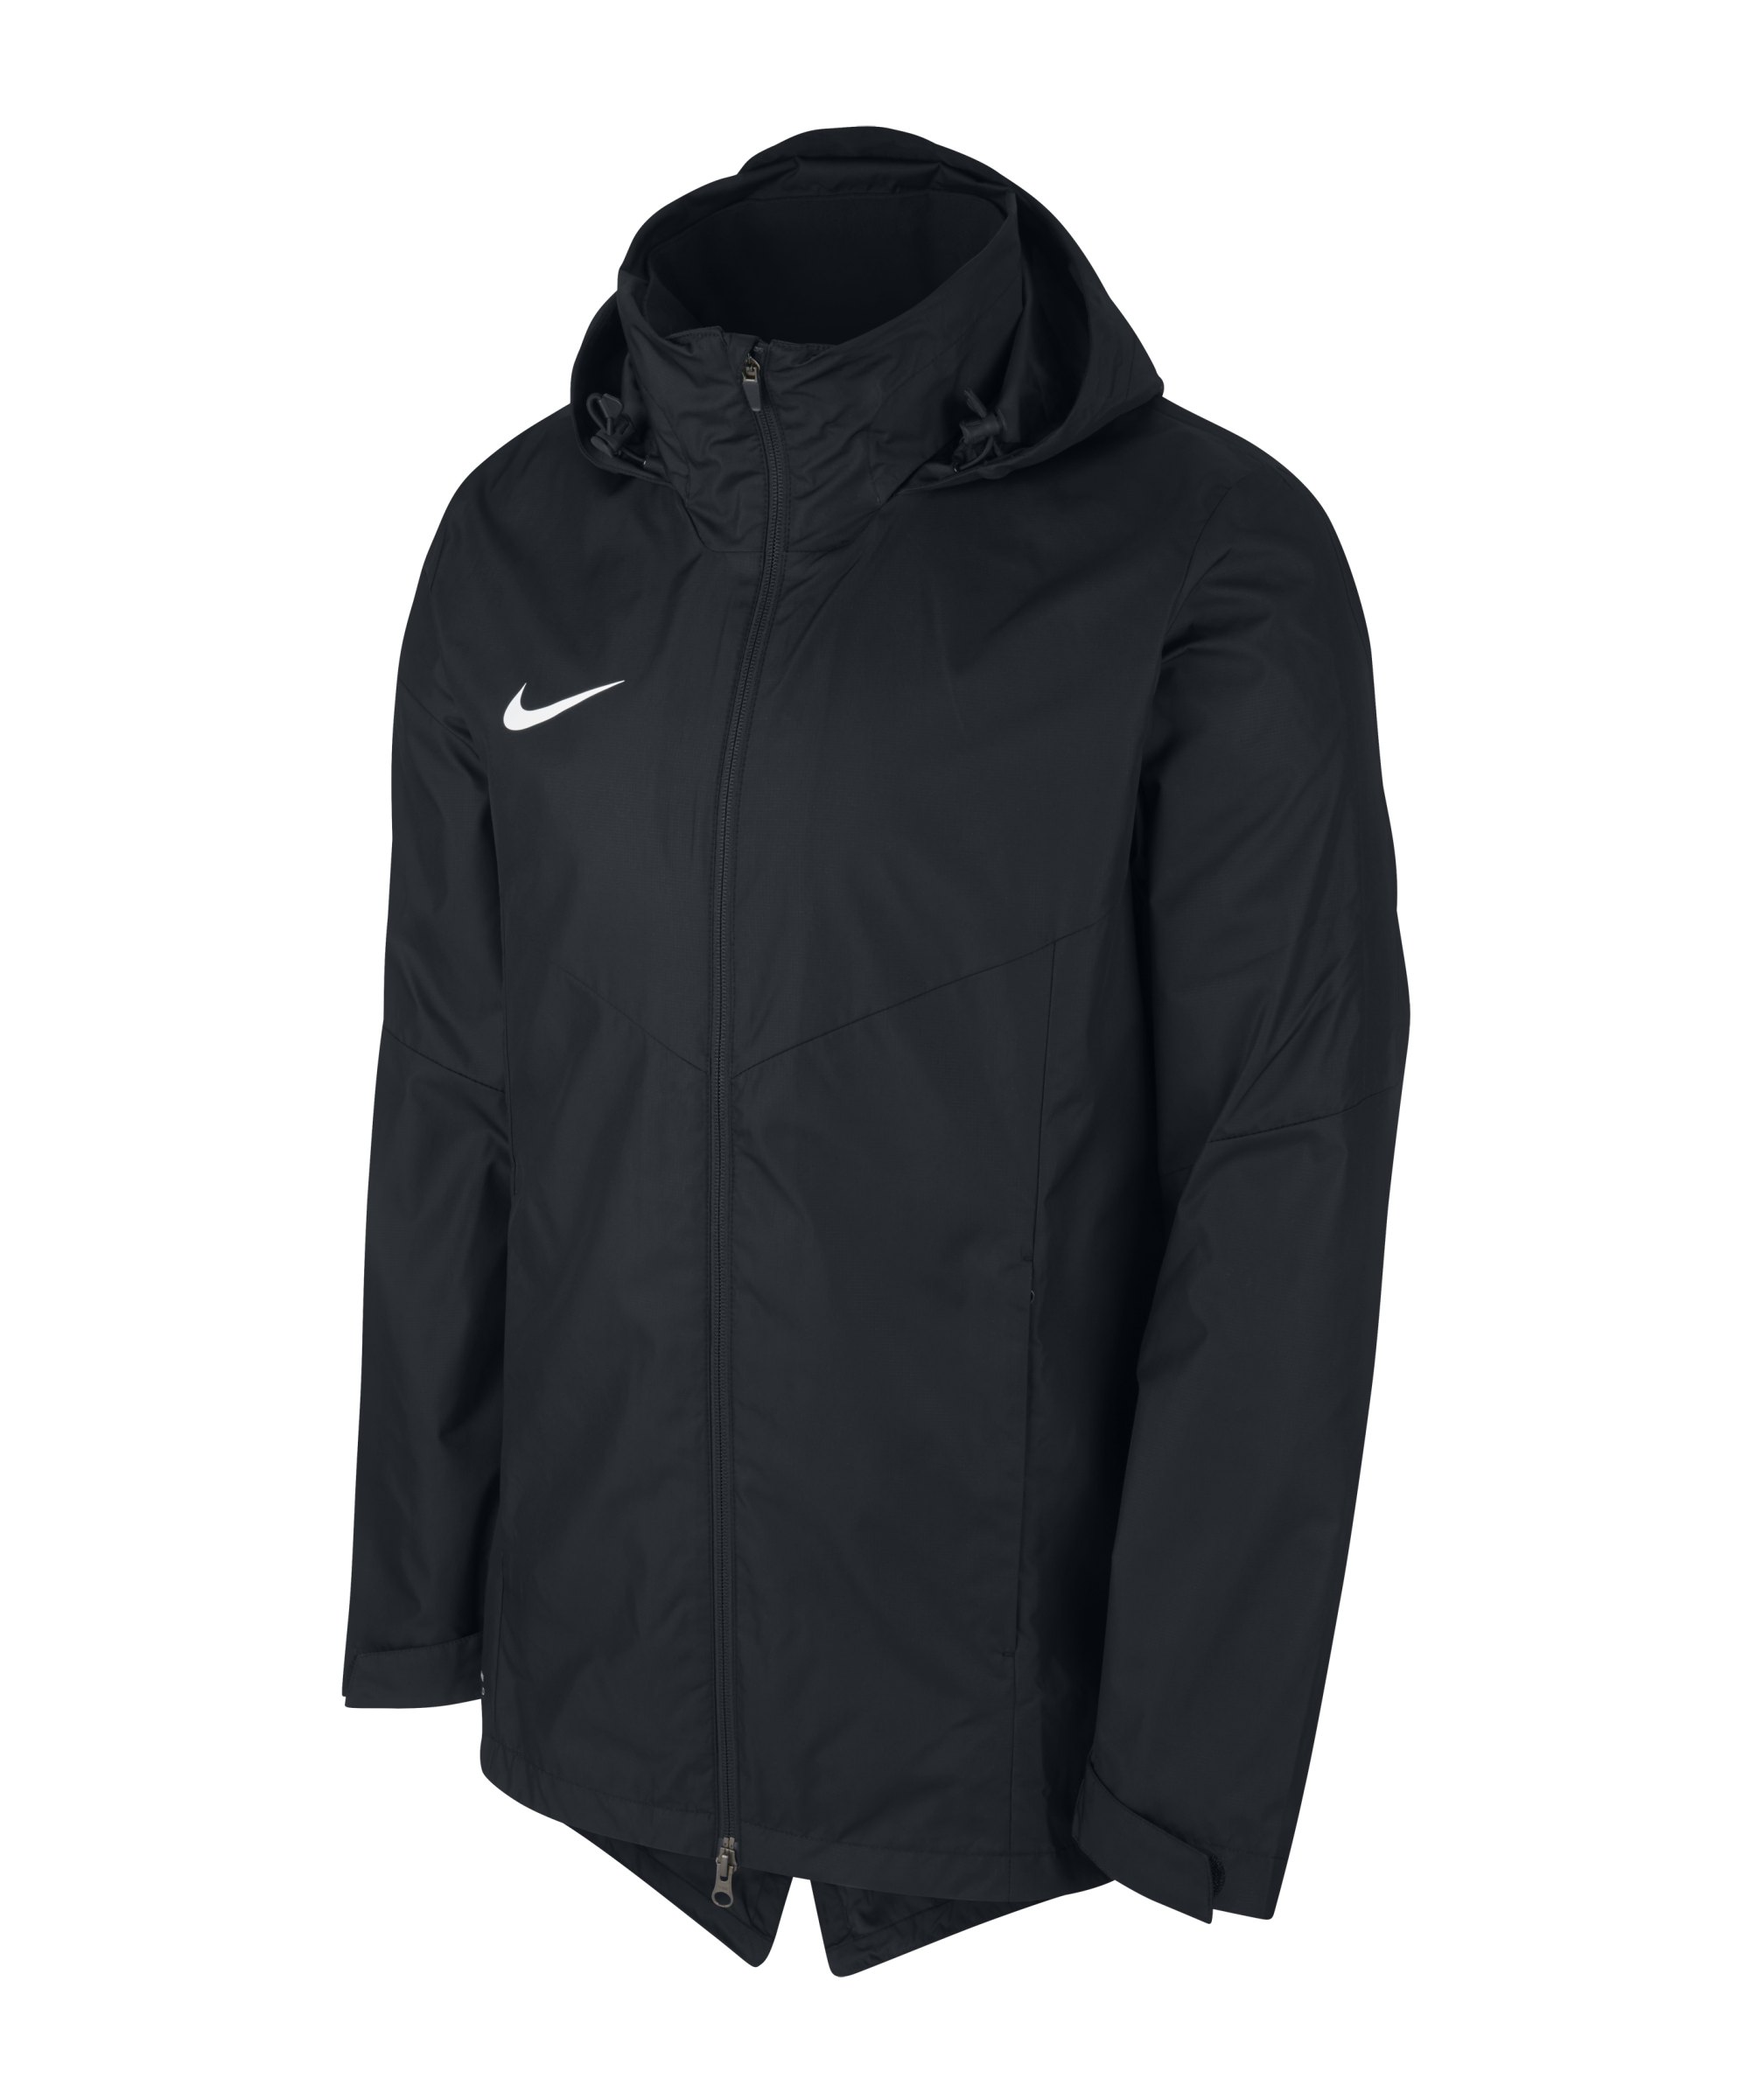 Nike Academy 18 Regenjacke Schwarz F010 - schwarz